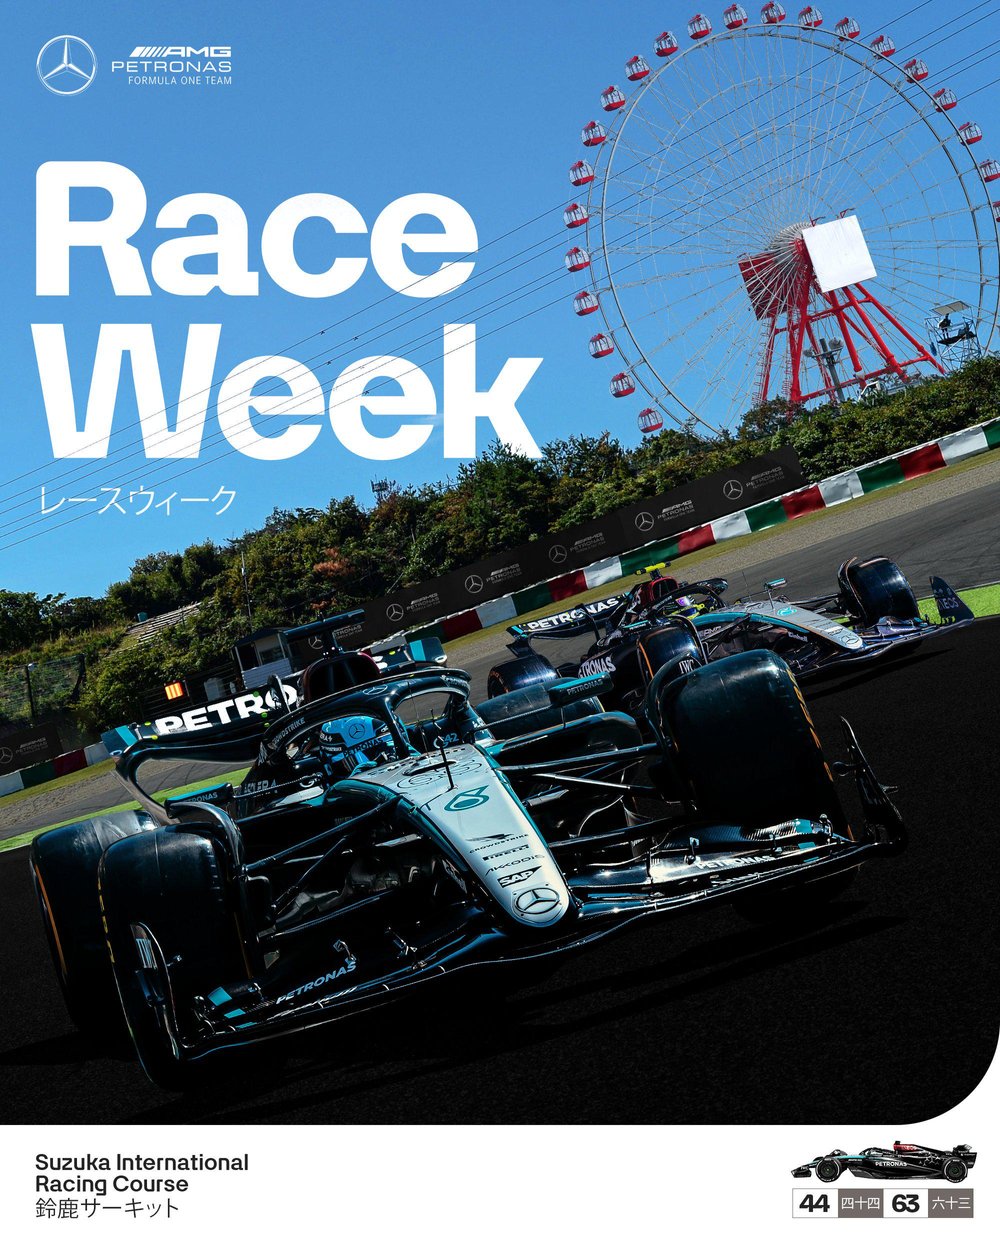 3 Race Week Mercedes poster 1.jpg